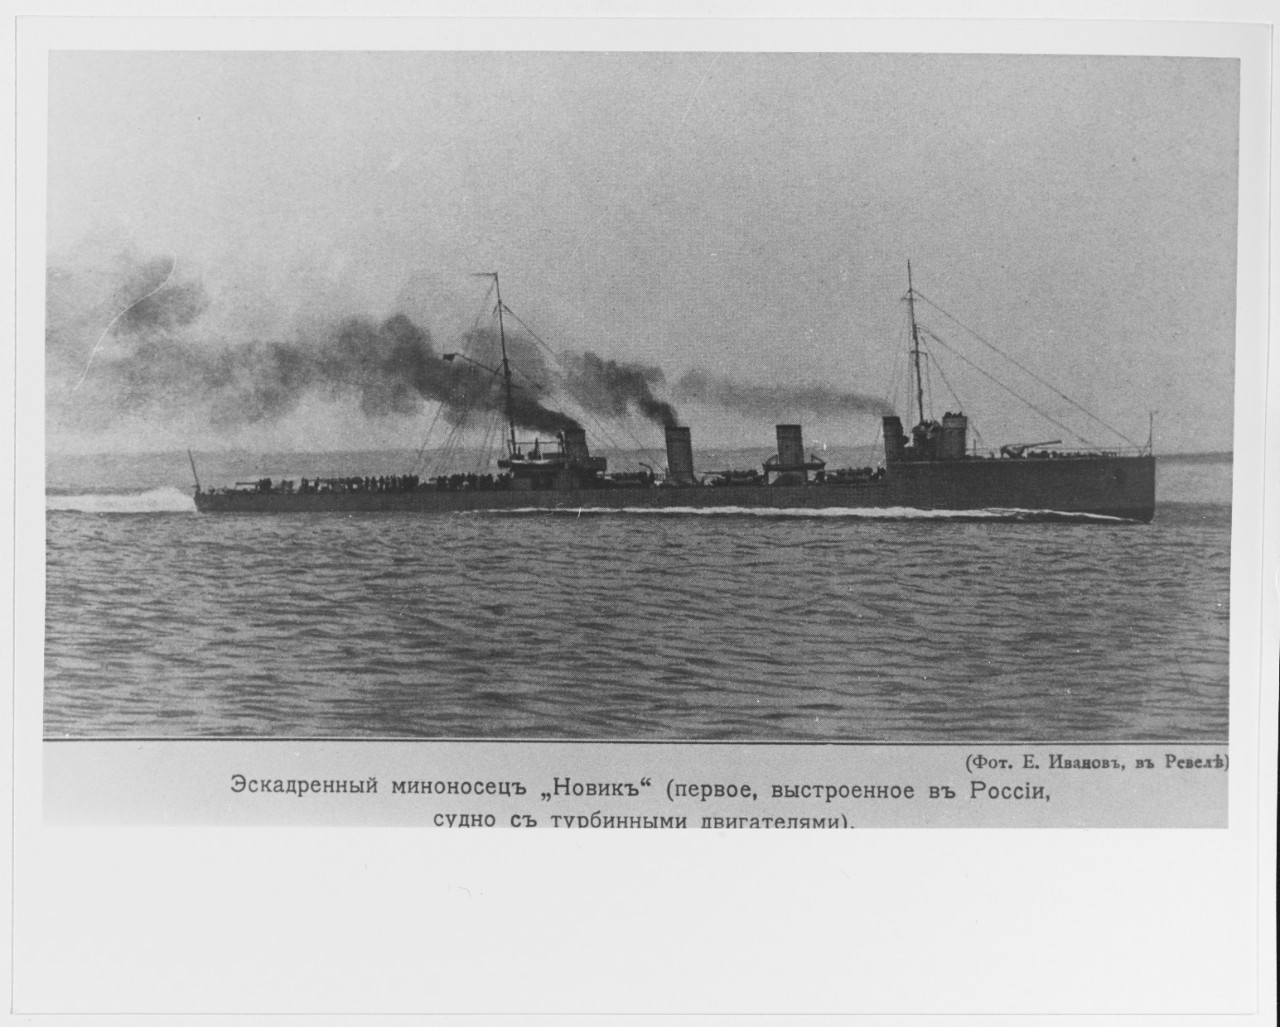 NOVIK (Russian destroyer, 1913-1941)